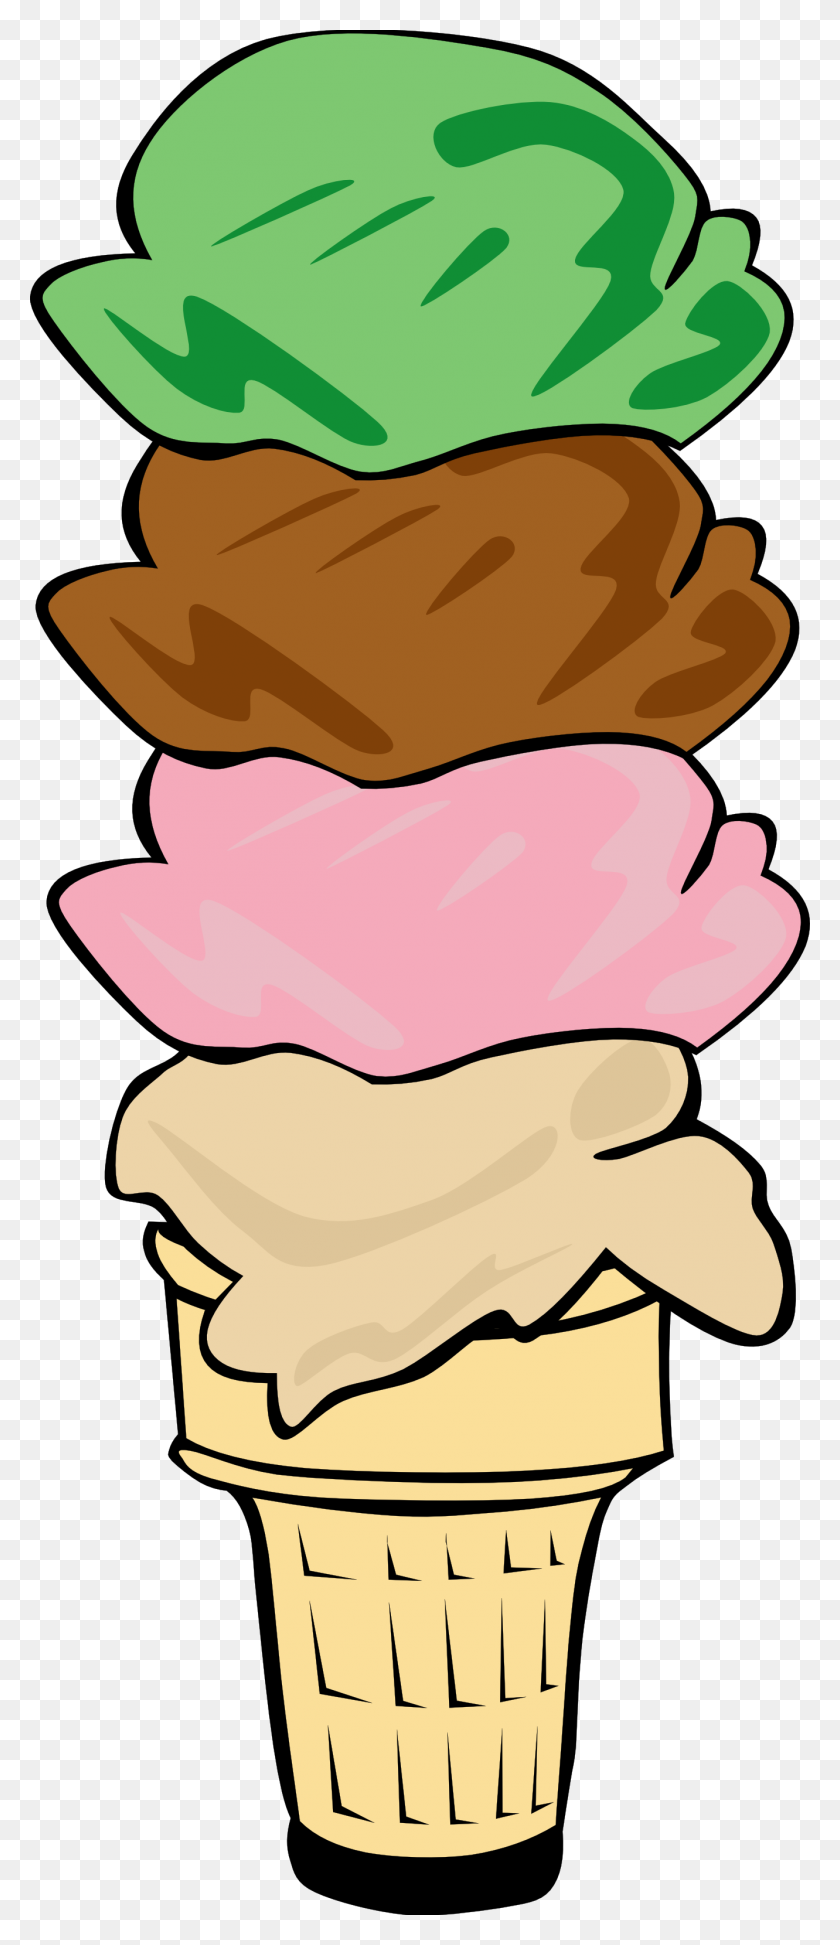 1331x3217 Ice Cream Social Clip Art Look At Ice Cream Social Clip Art Clip - Frozen Clipart Images